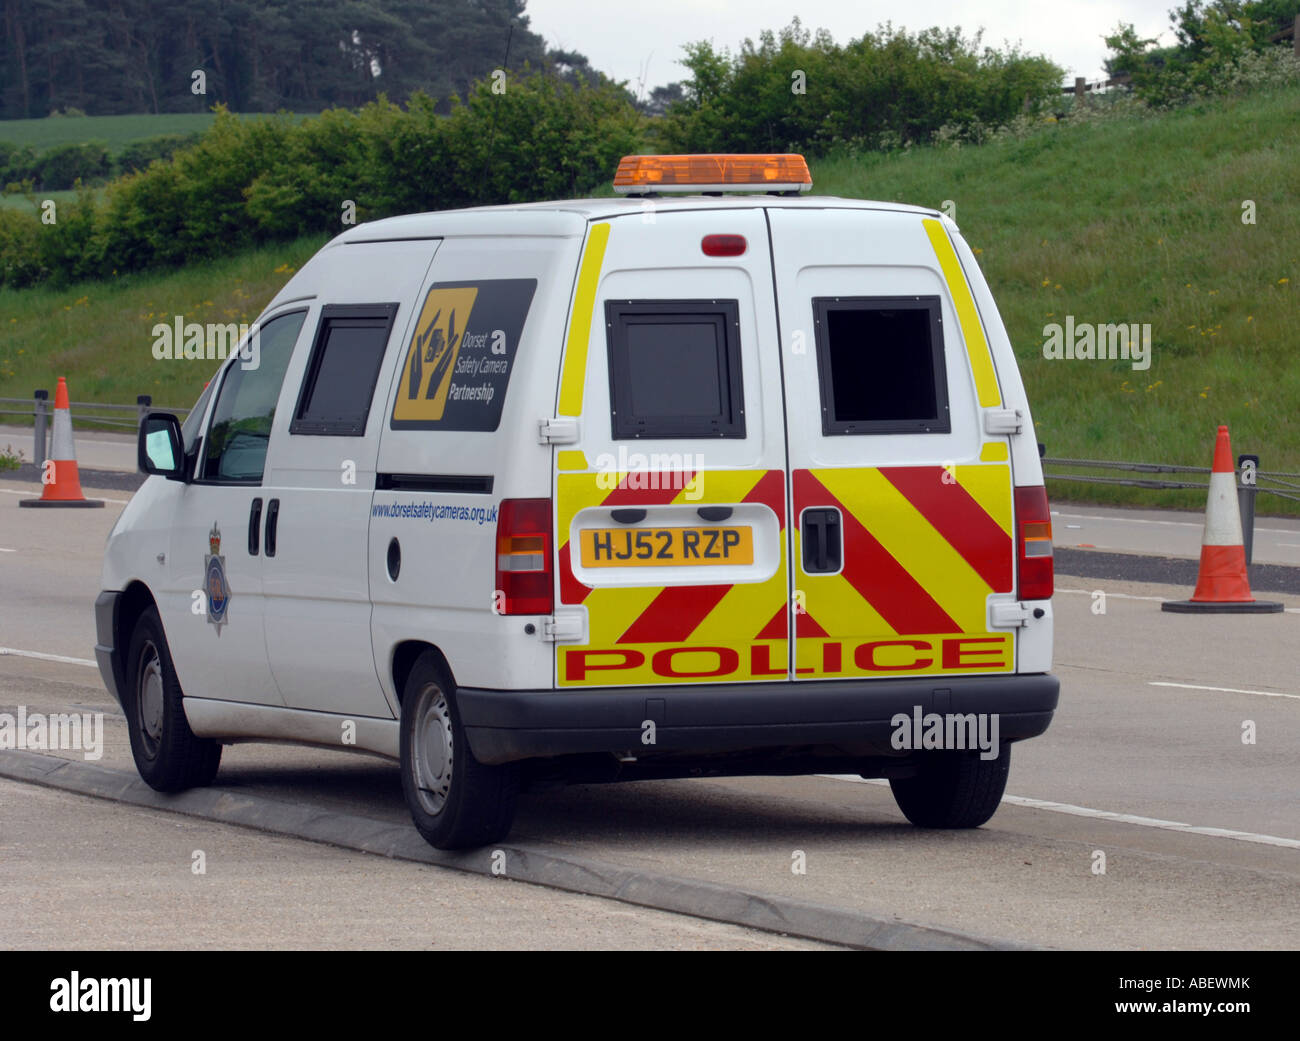 Mobilen Geschwindigkeit Kamera van, Großbritannien, UK, Radar-Falle Polizeifahrzeug Stockfoto